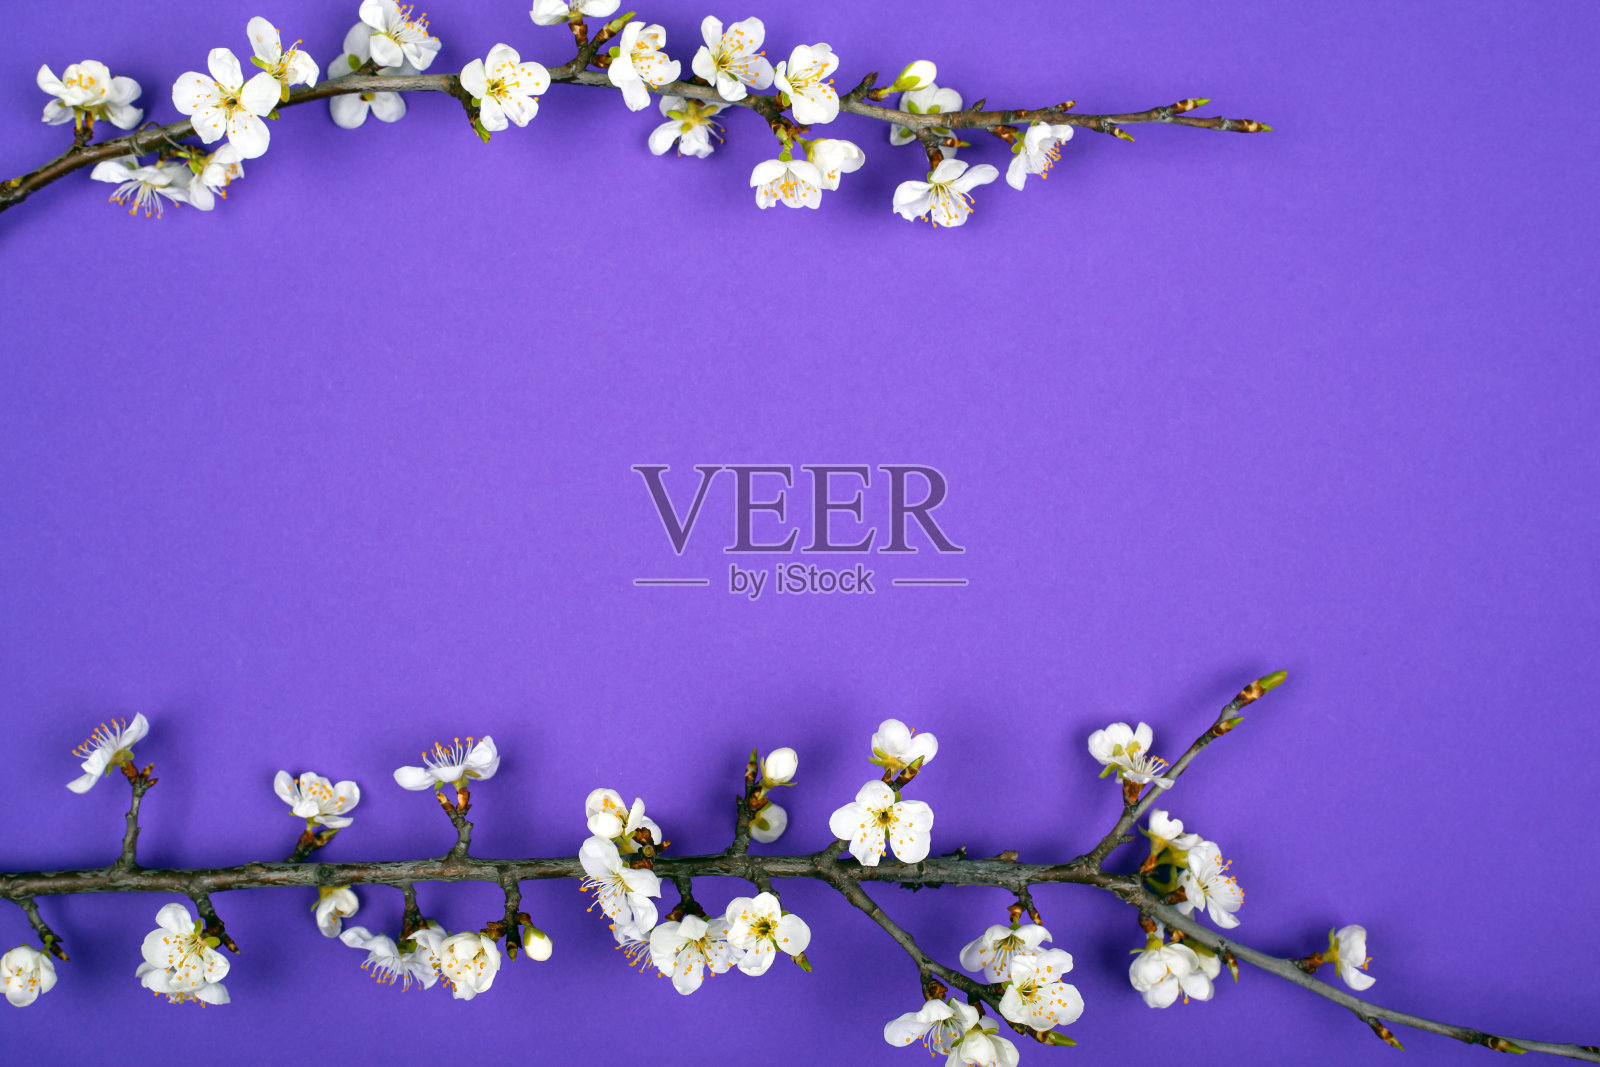 盛开的嫩枝杏花春色紫美
背景布置图平铺照片摄影图片